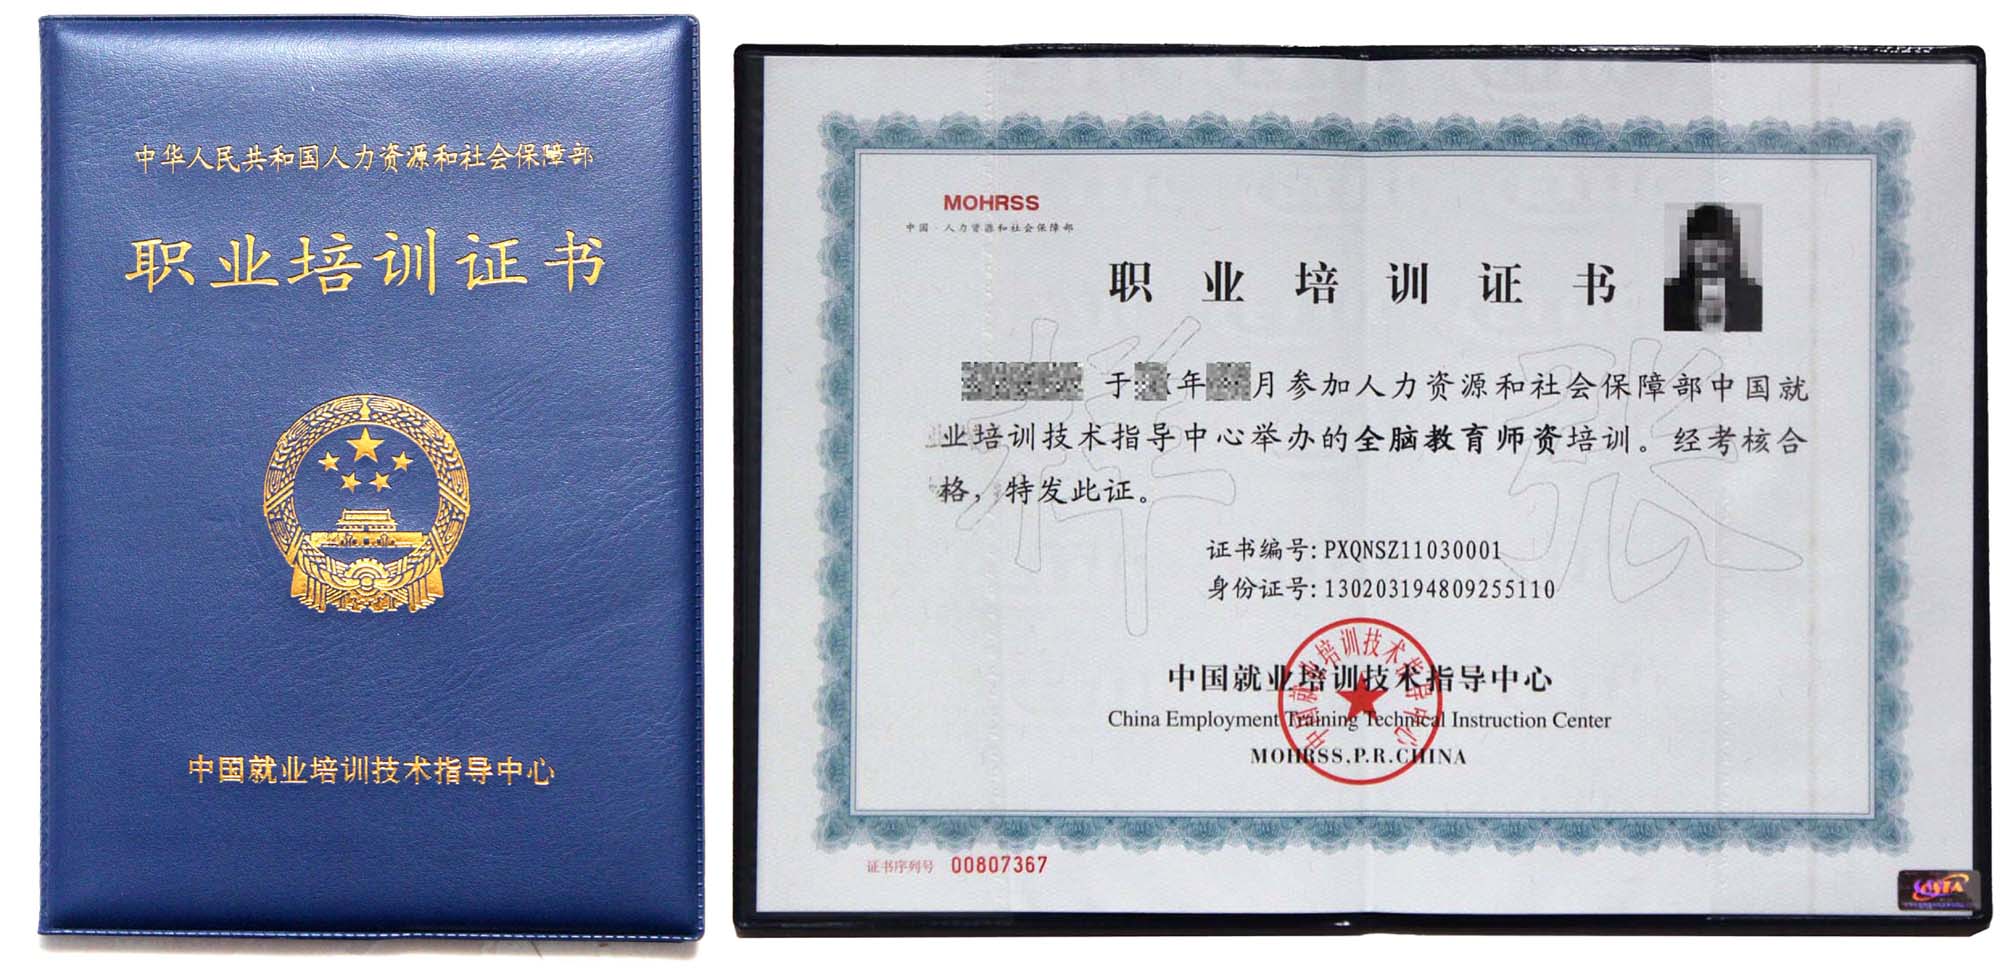 专业高级》      认证主办单位: 人力资源和社会保障部中国就业培训